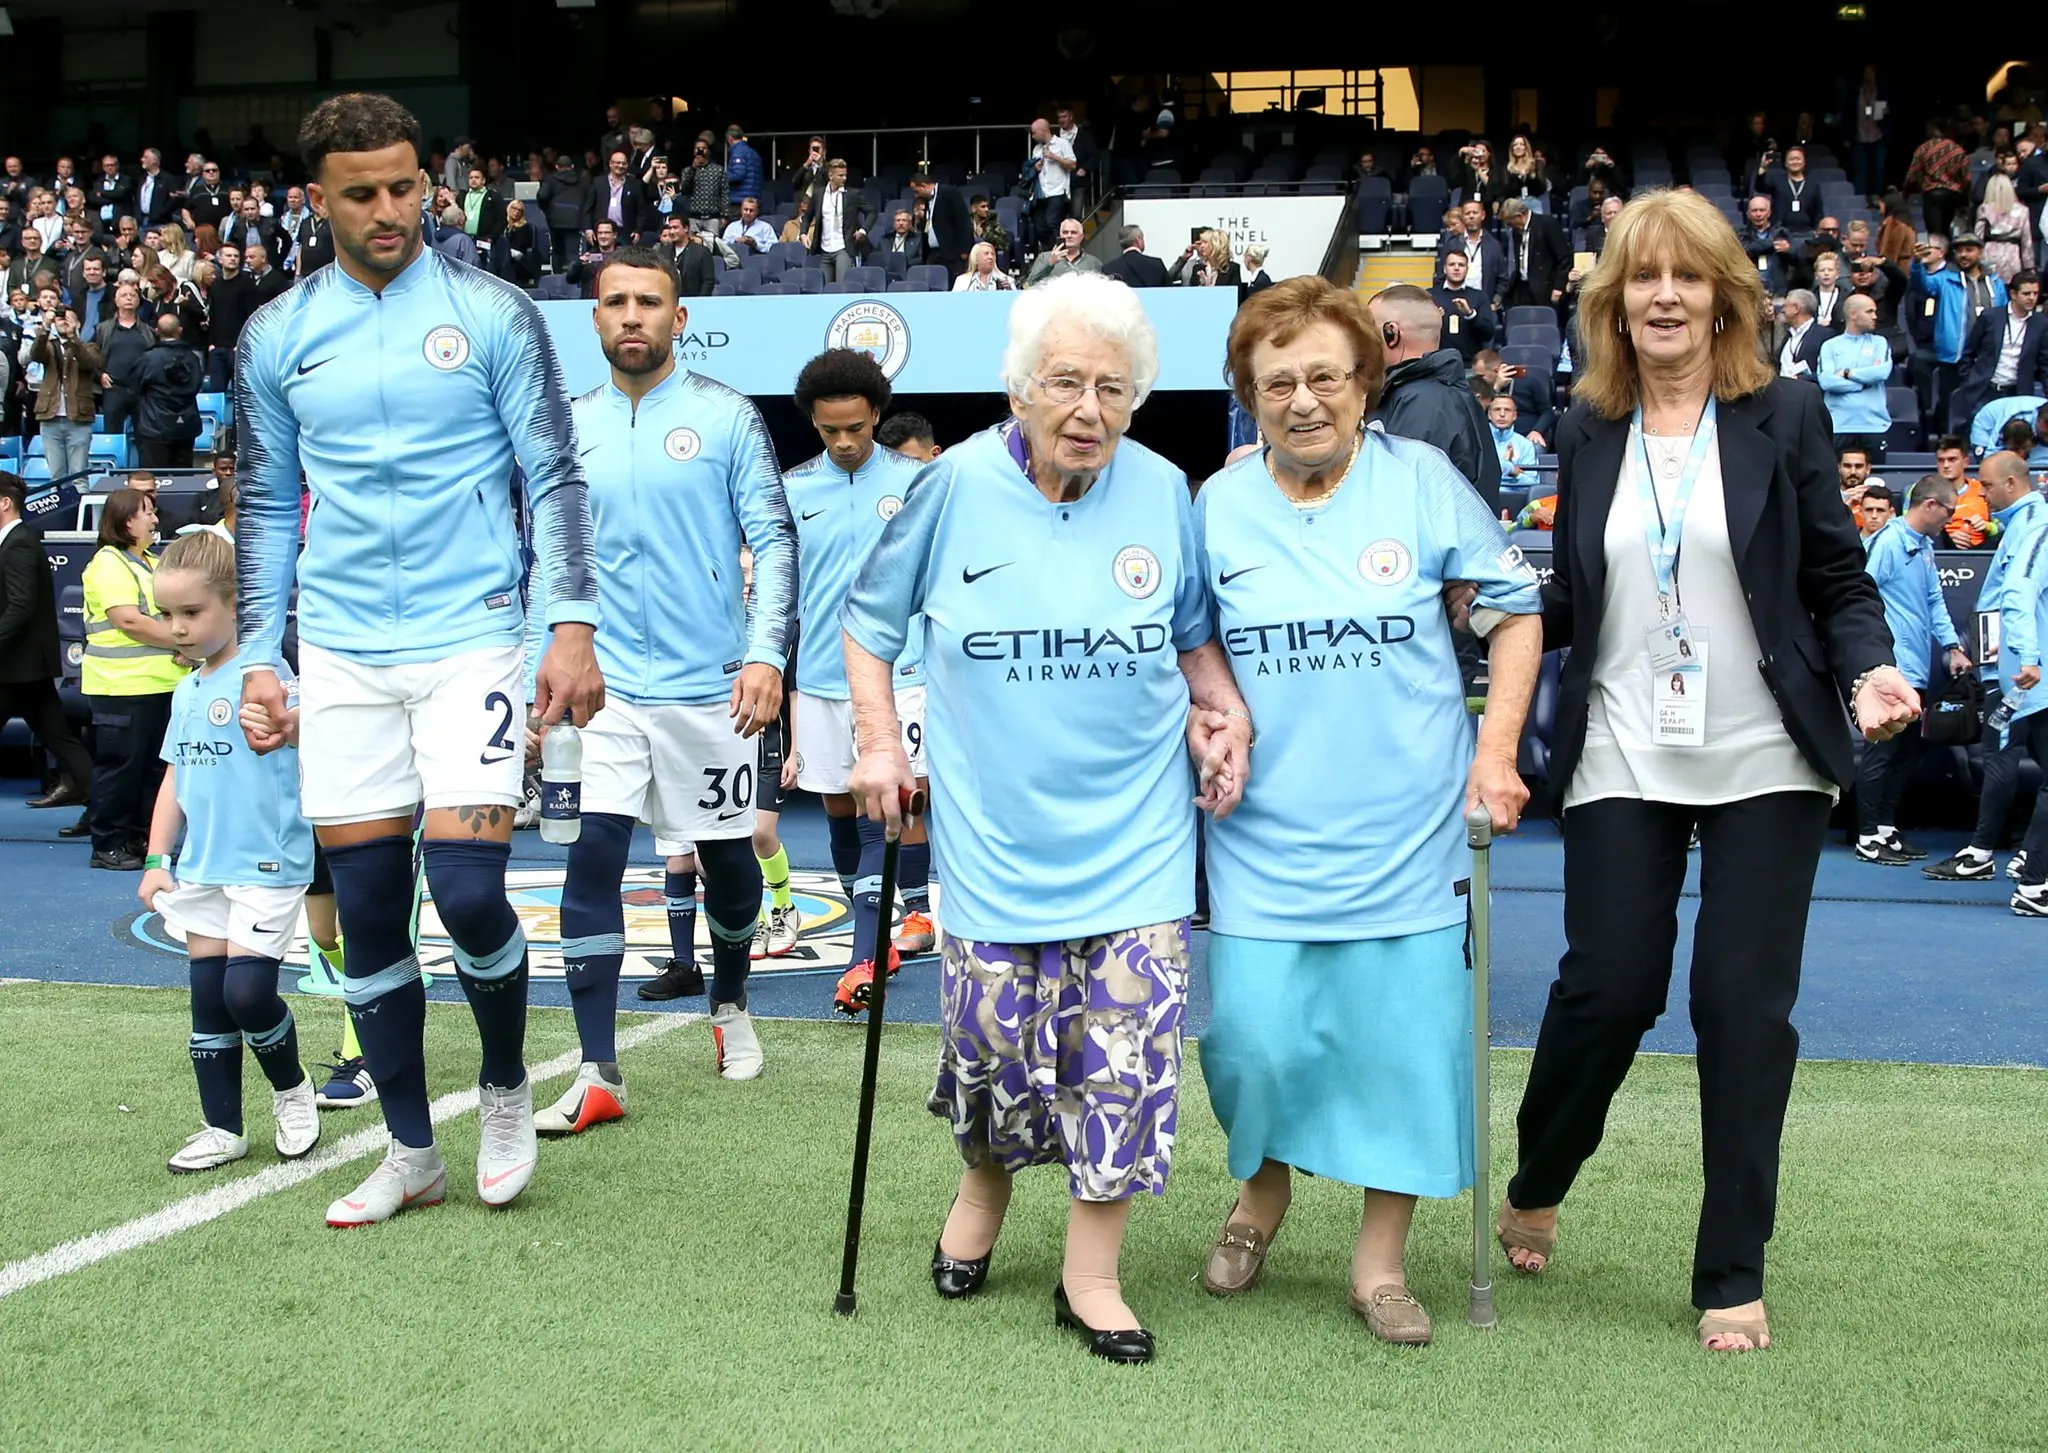 Vidéo : deux supportrices de 98 et 102 ans sont rentrées sur la pelouse avec les joueurs de City samedi